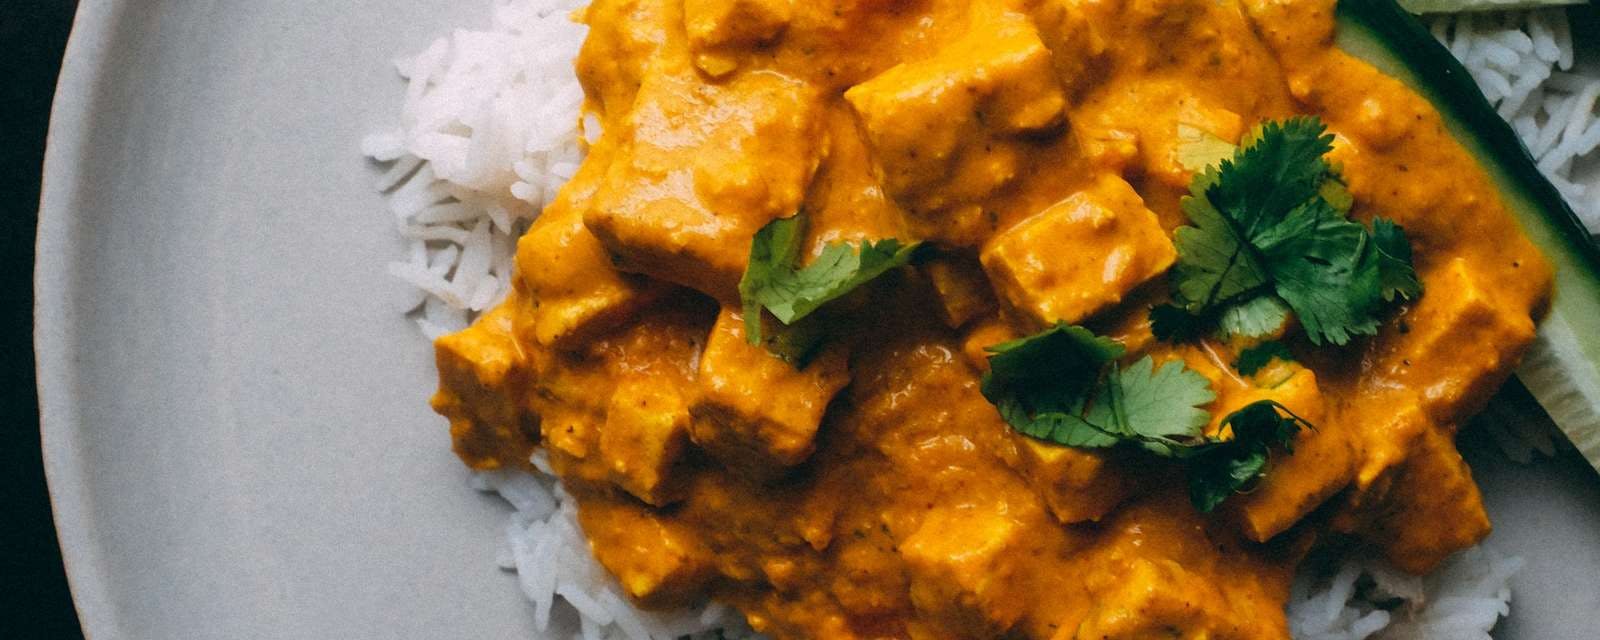 Indisches Tofu-Curry von oben